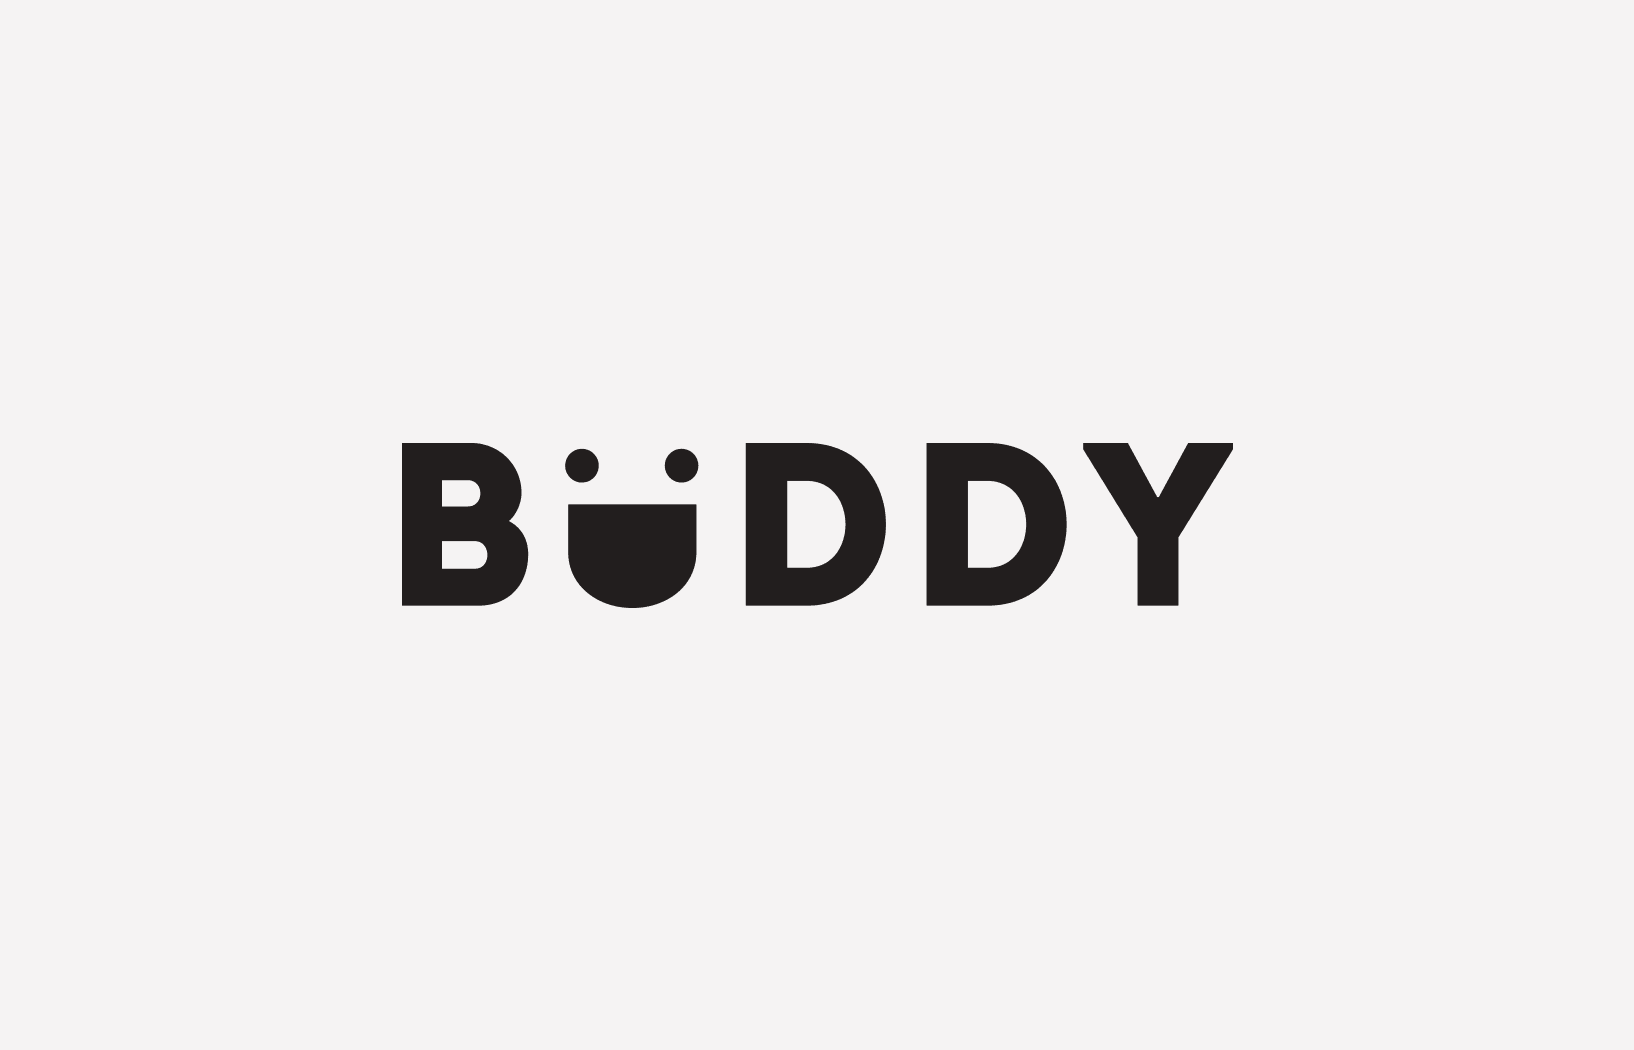 Buddy - Une Boisson Énergisante 100% Naturelle